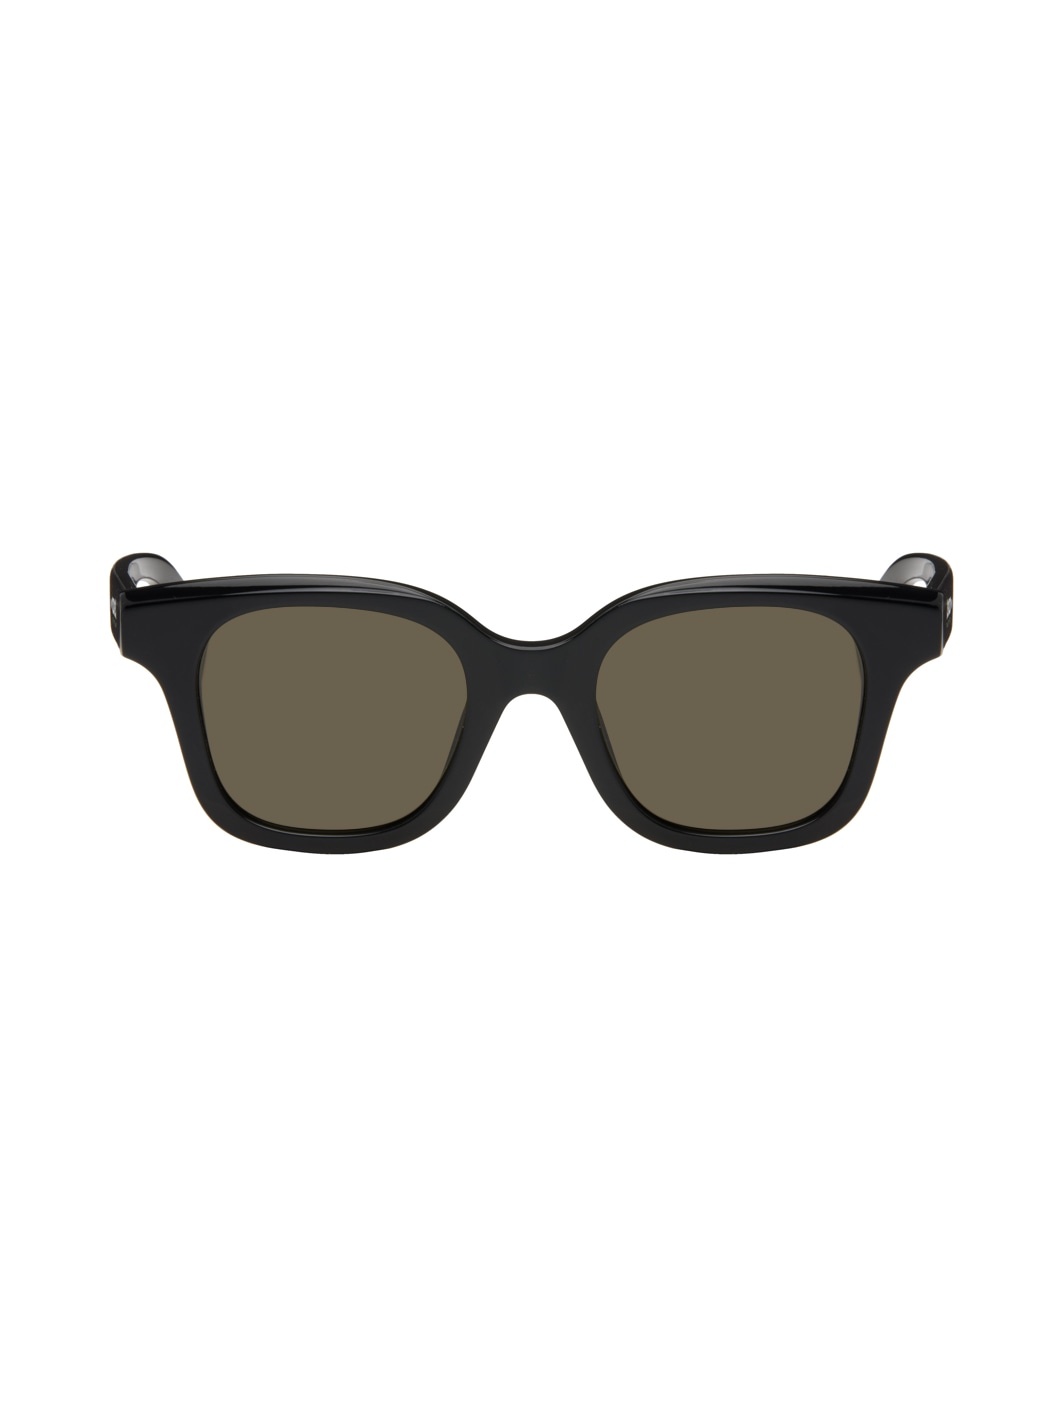 Black Kenzo Paris Square Sunglasses - 1